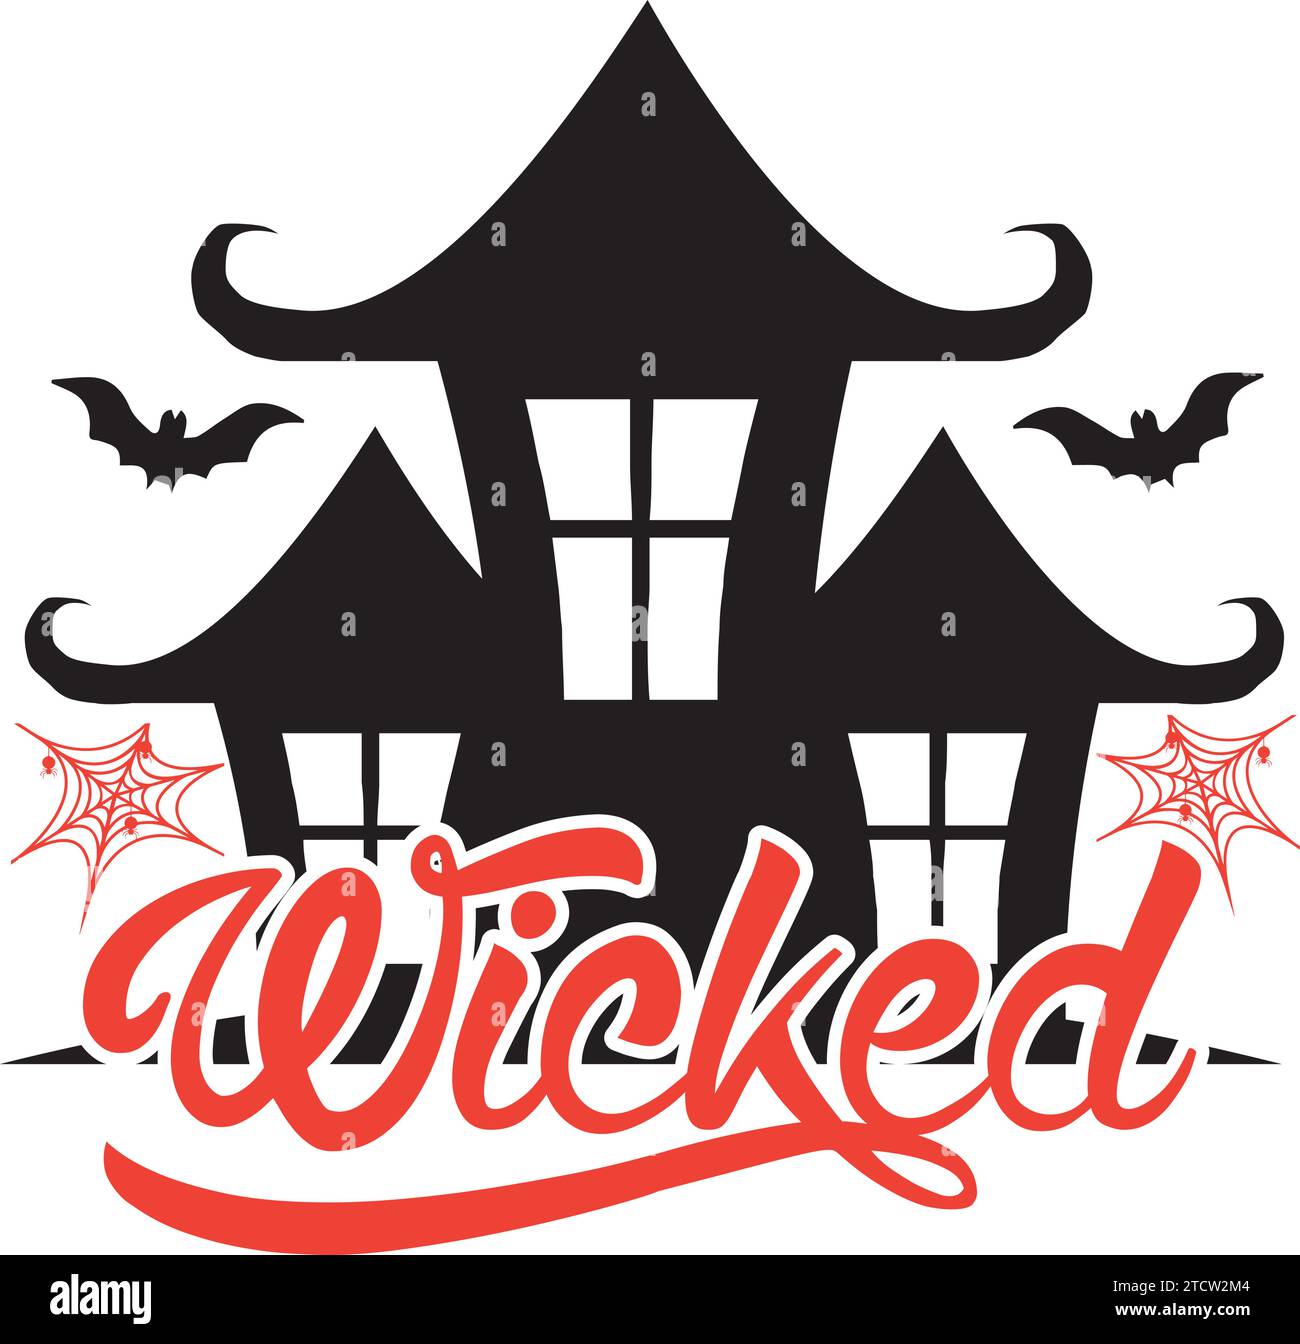 Wicked ,Halloween SVG Design Stock Vector